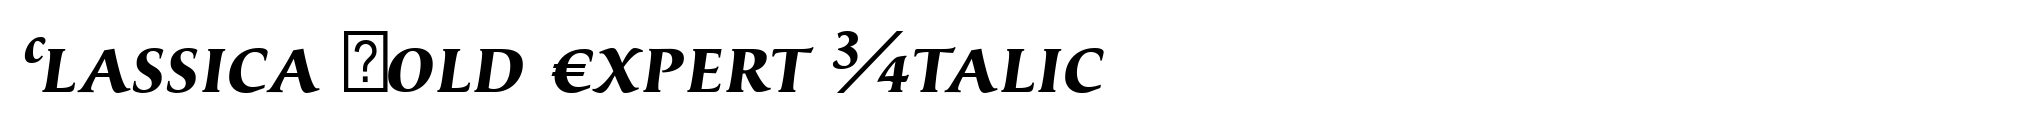 Classica Bold Expert Italic image